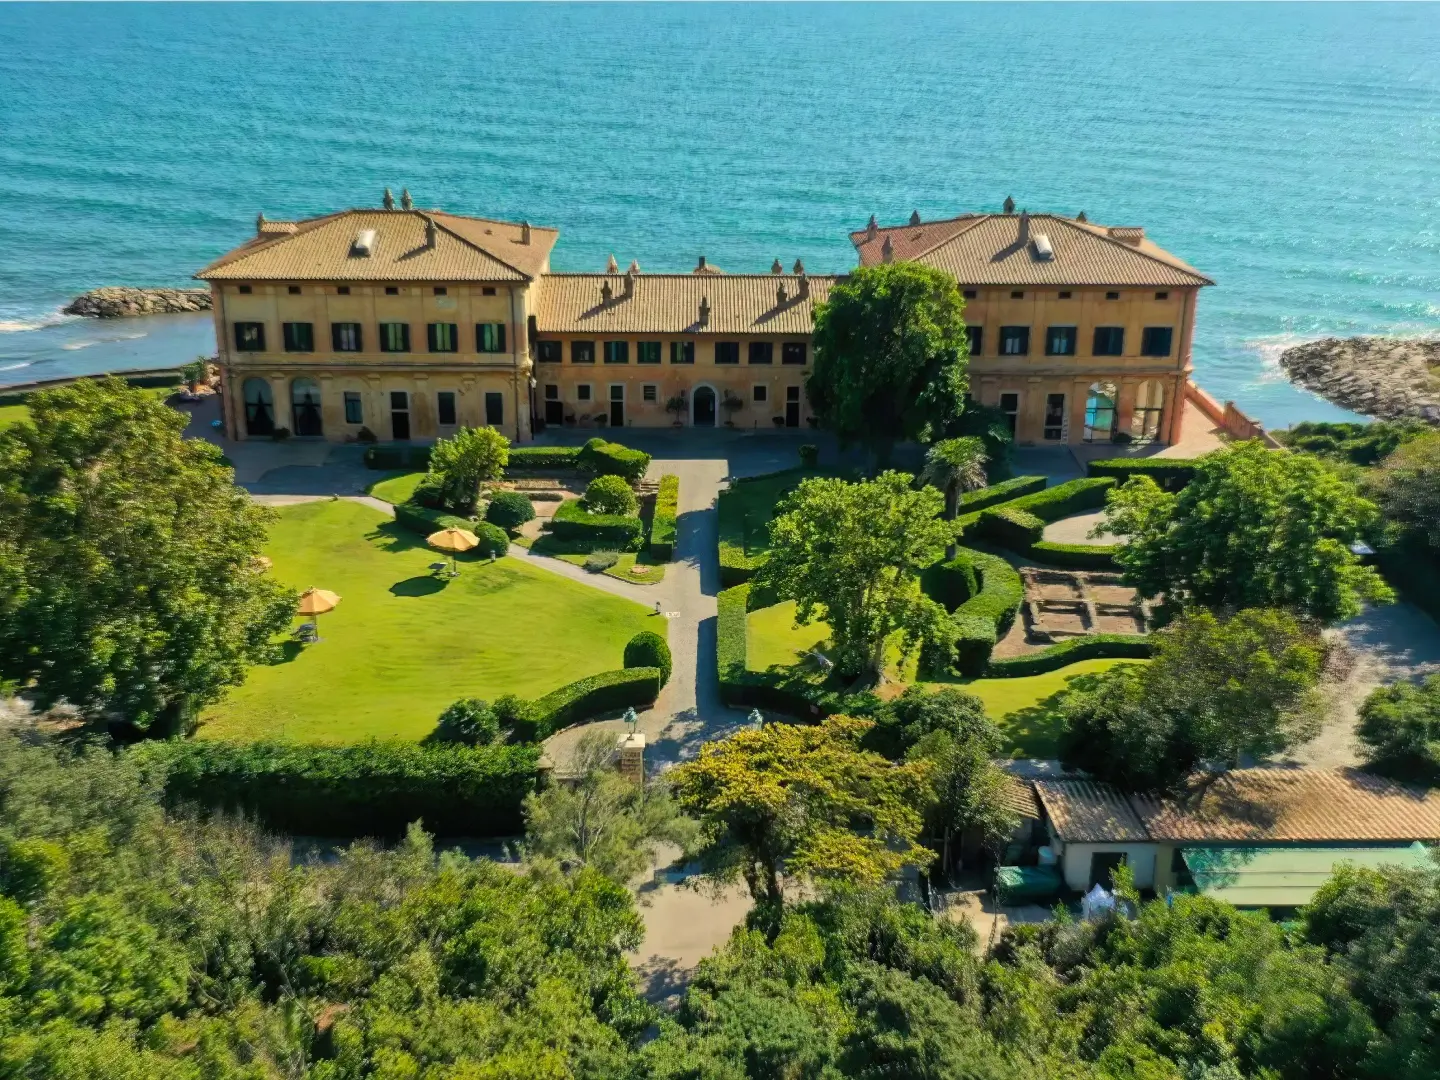 View of La Posta Vecchia Lazio's seaside villa and stunning coastline